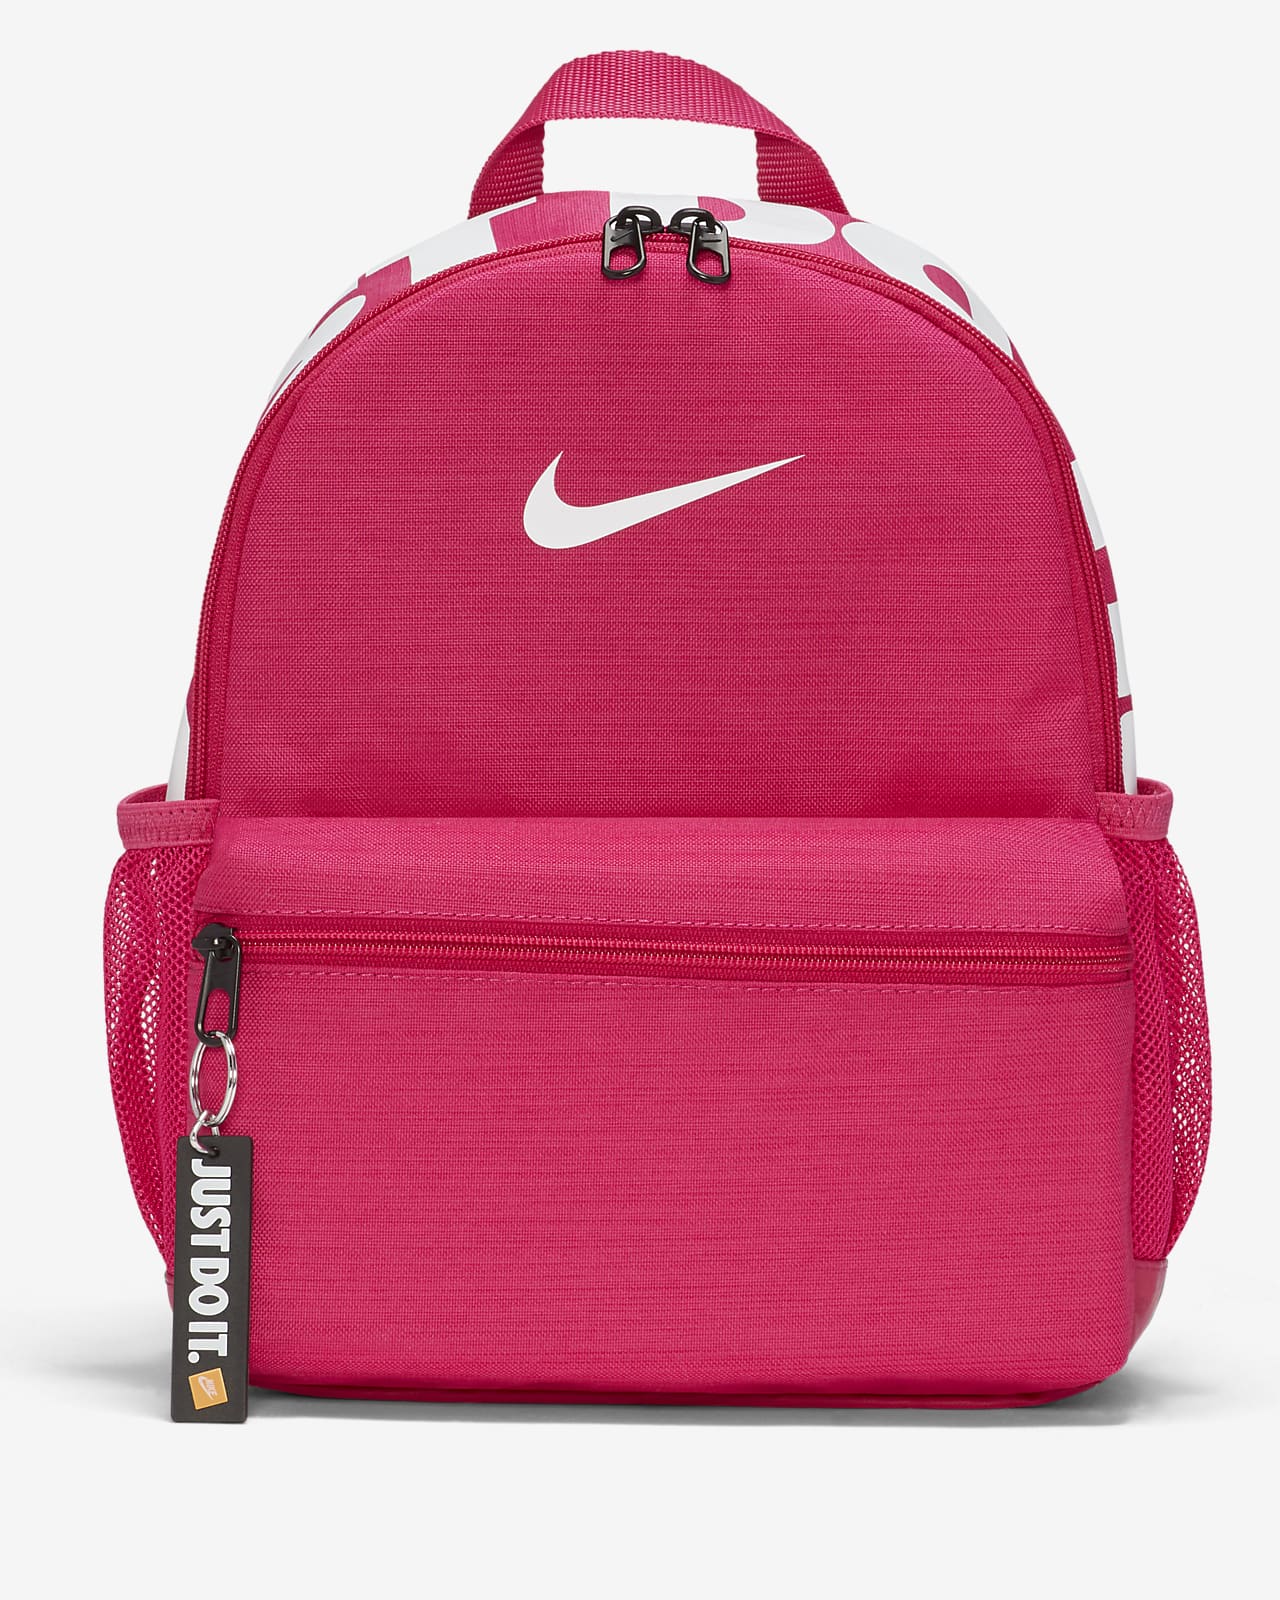 Nike Brasilia JDI Backpack (Mini) - Kid's - GBNY